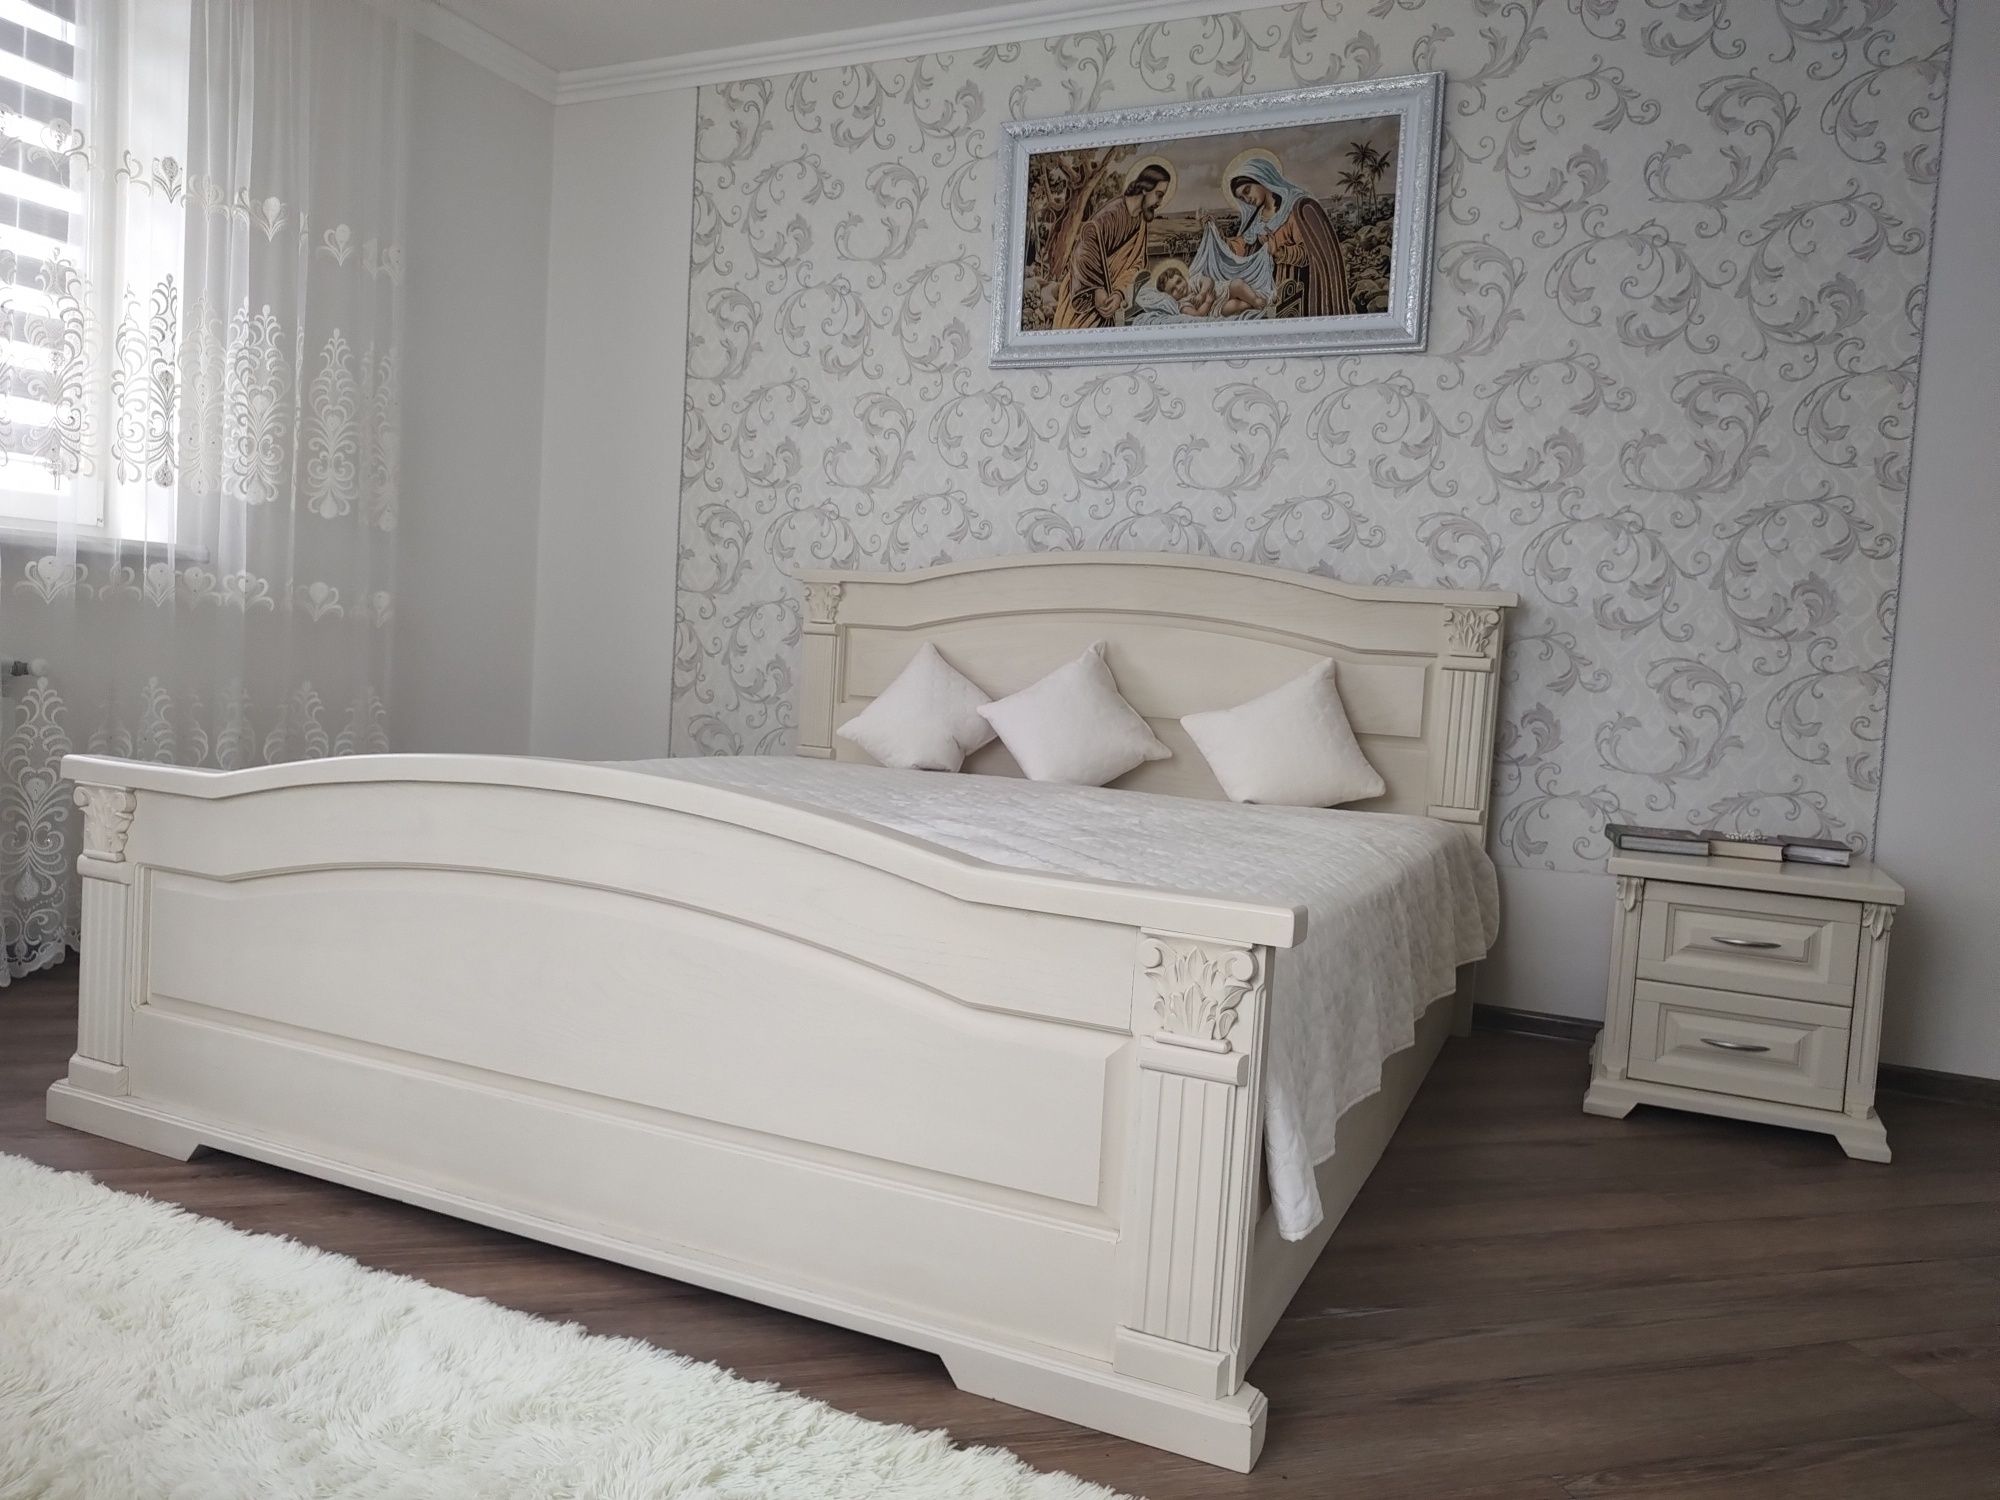 Ліжко двоспальне дерев'яне( ясінь, дуб)